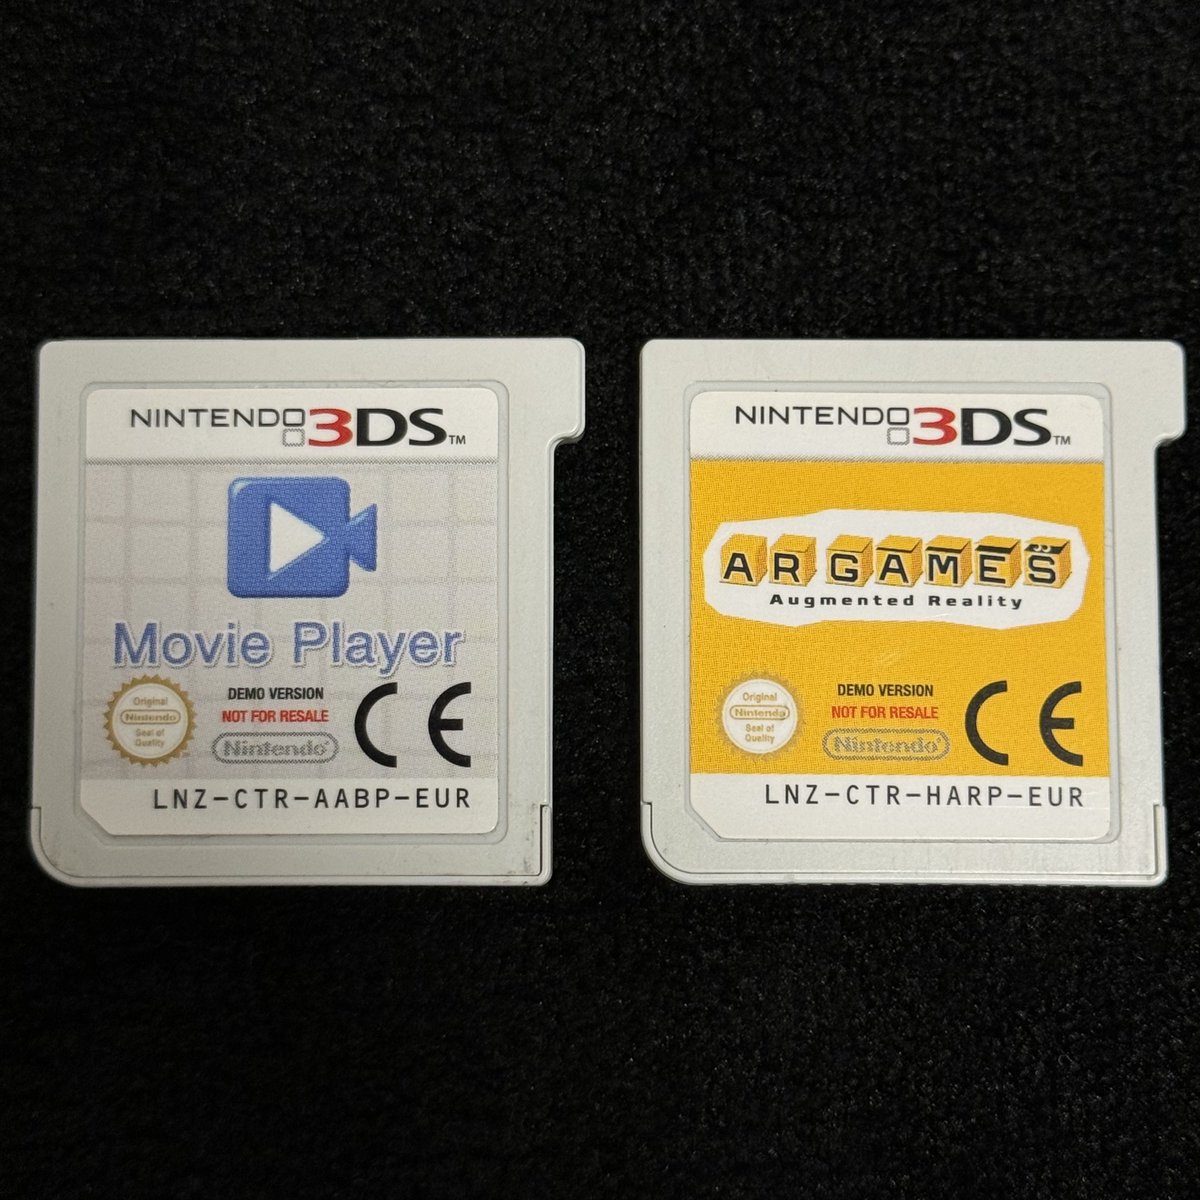 Nintendo 3DS Movie Player DEMO(EUR) を入手しました！
欧州の店頭で主に販促用として使用されていたカートリッジになります。
3DS本体側SDカードに映像データが内蔵していないため、ソフト起動時には 'No Movies available.' と表示されます。
欧州版3DSの店頭デモ用ソフトは2種類揃いました👾